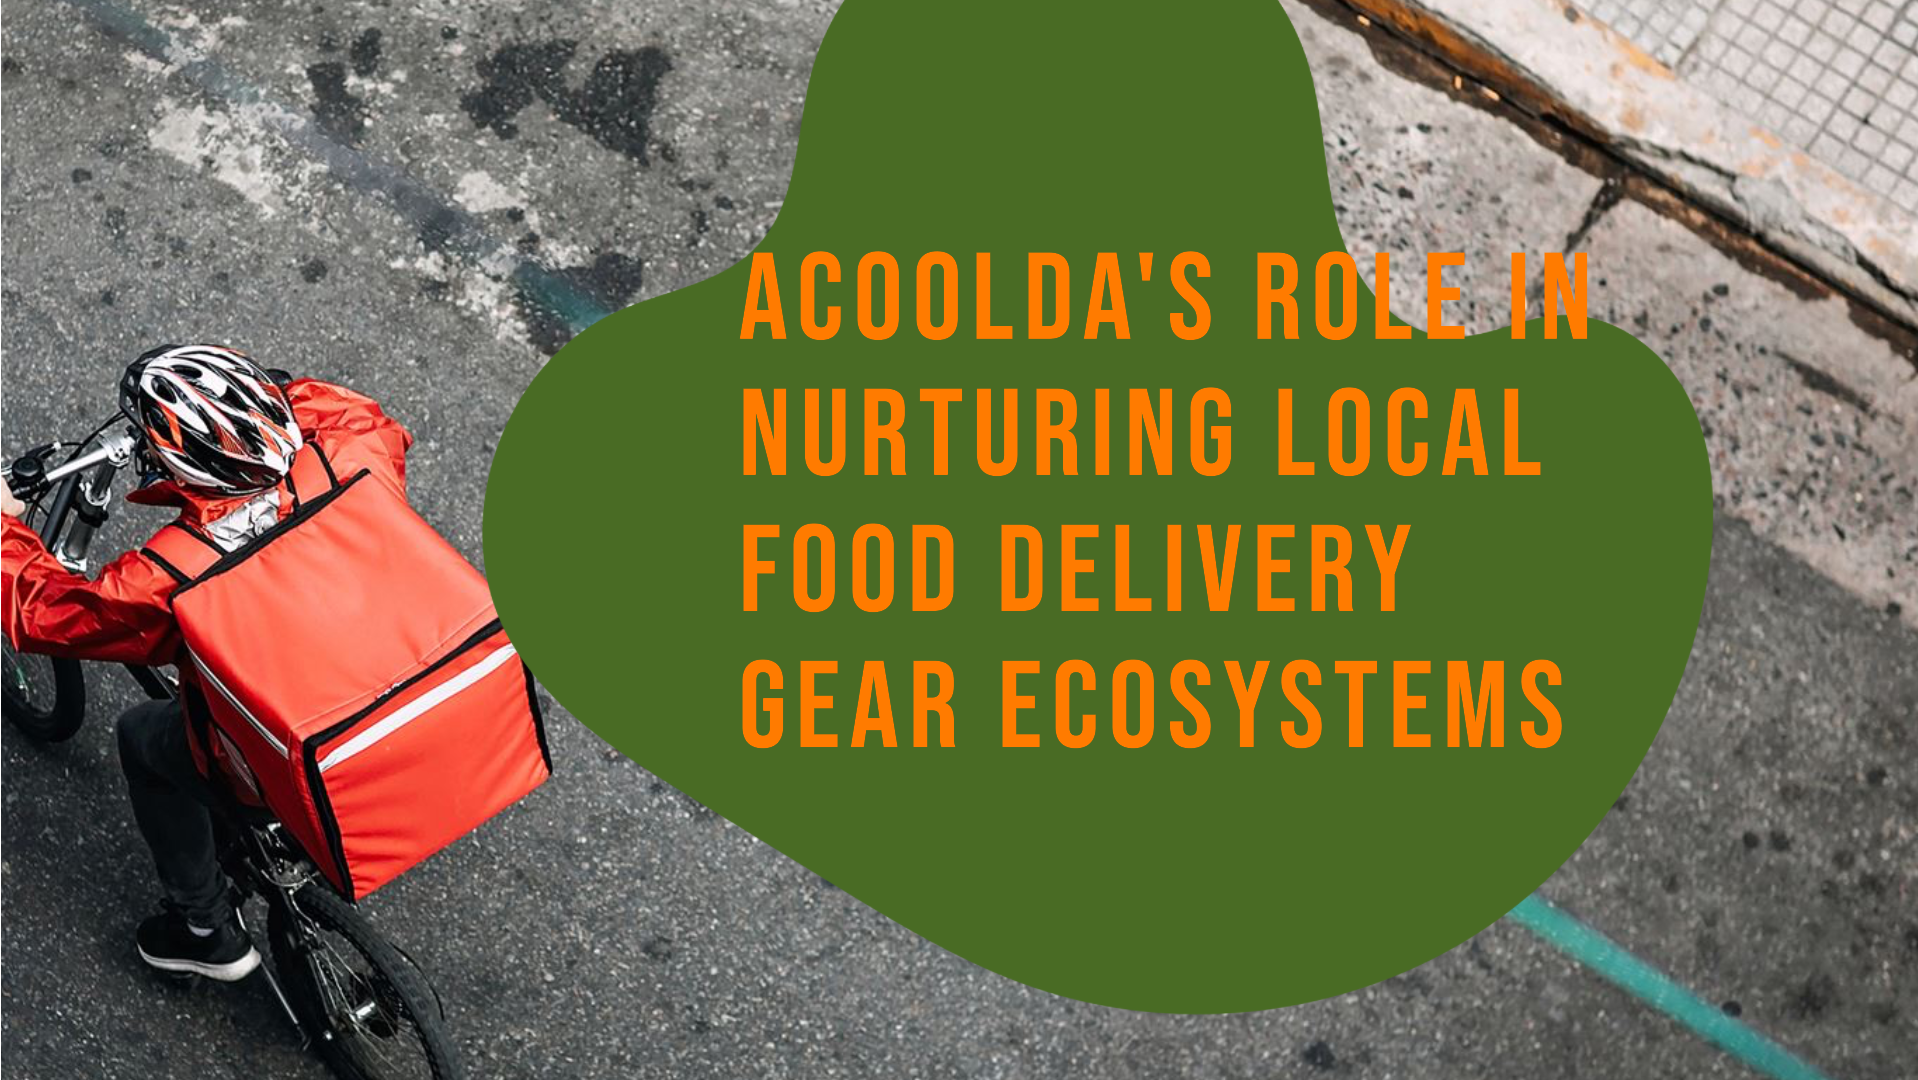 Die Rolle von ACOOLDA bei der Förderung lokaler Ökosysteme für Lebensmittellieferungsgeräte